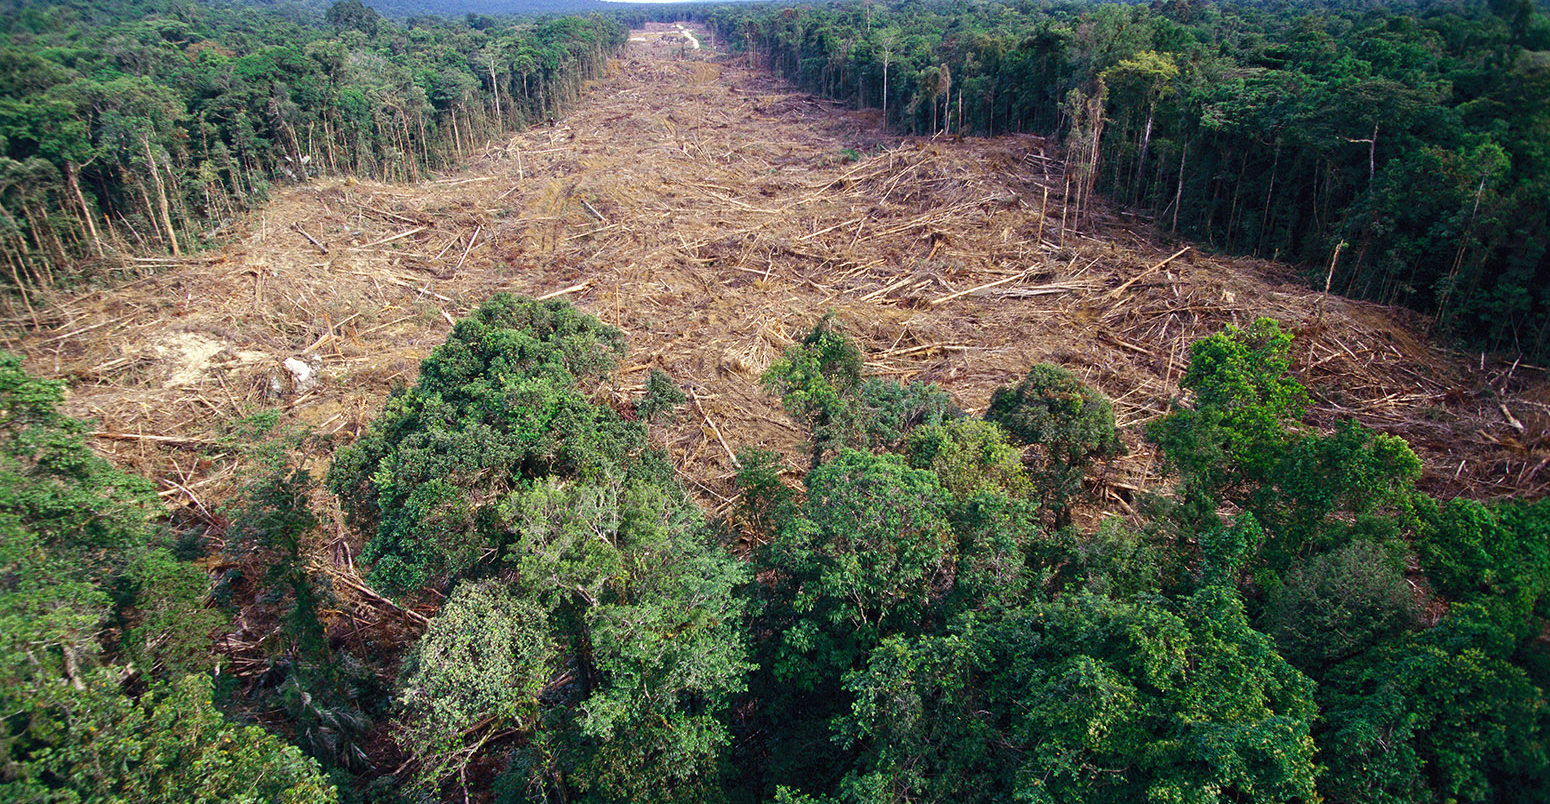 https://www.carbonbrief.org/wp-content/uploads/2018/04/rainforest-deforestation-1550x804.jpg